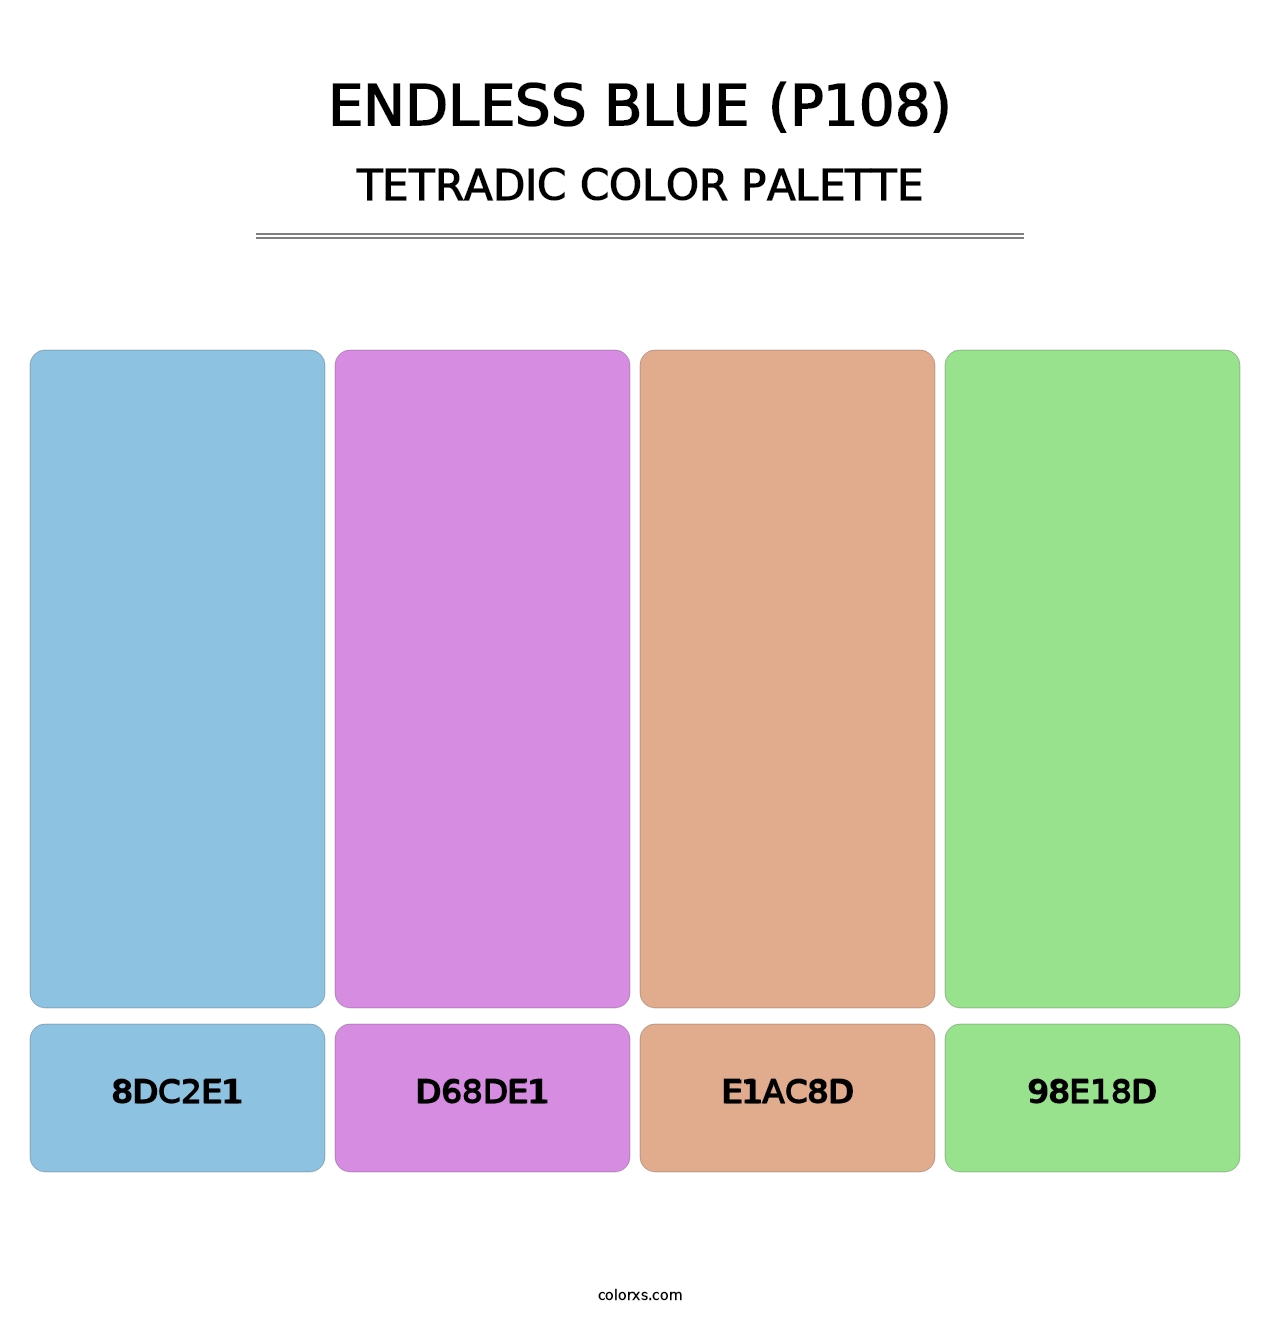 Endless Blue (P108) - Tetradic Color Palette